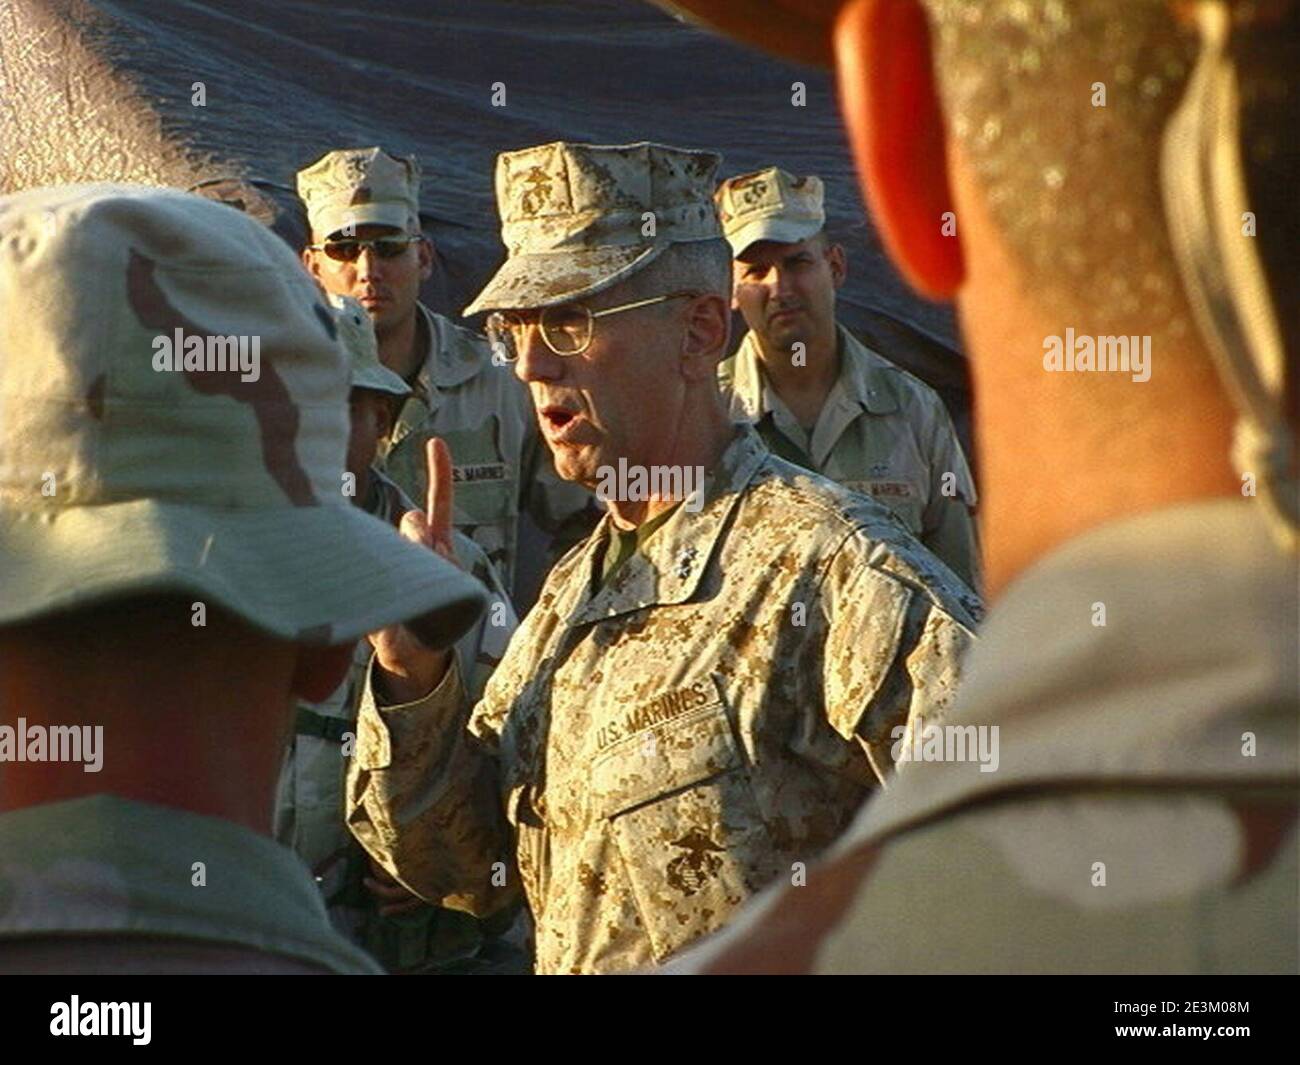 El General de División James N. Mattis se dirige al Batallón de los Marines de la Sede. Foto de stock